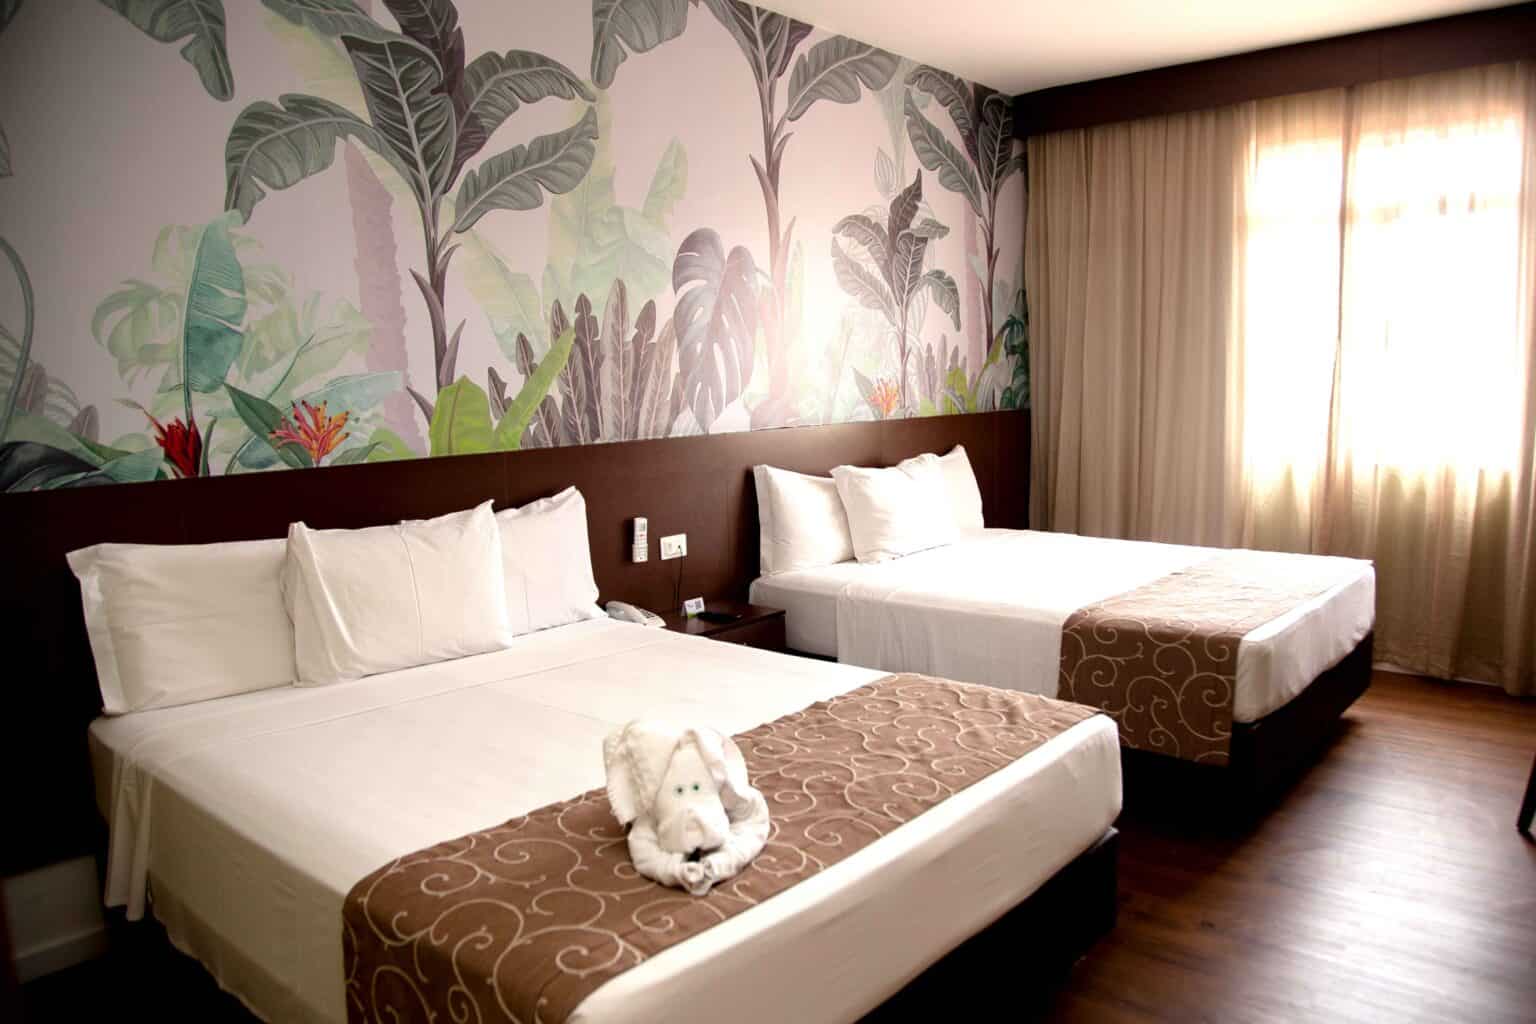 Apartamento quadroplo com decorado com pintura de folhagem e cama feita com cocha marrom.